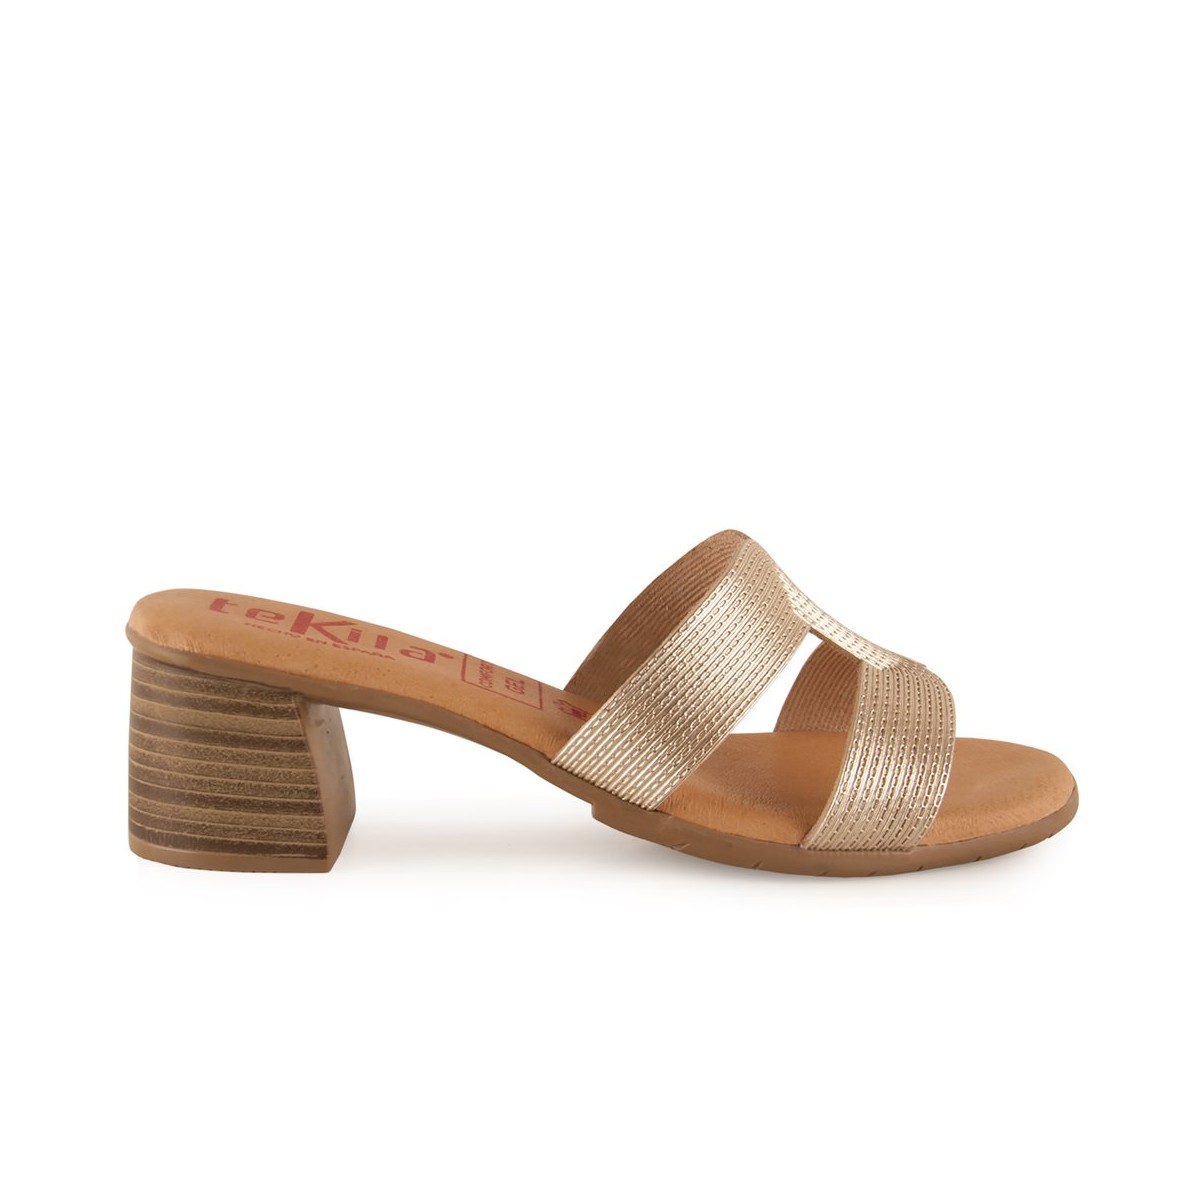 Gouden leren sandalen met hak van Tekila